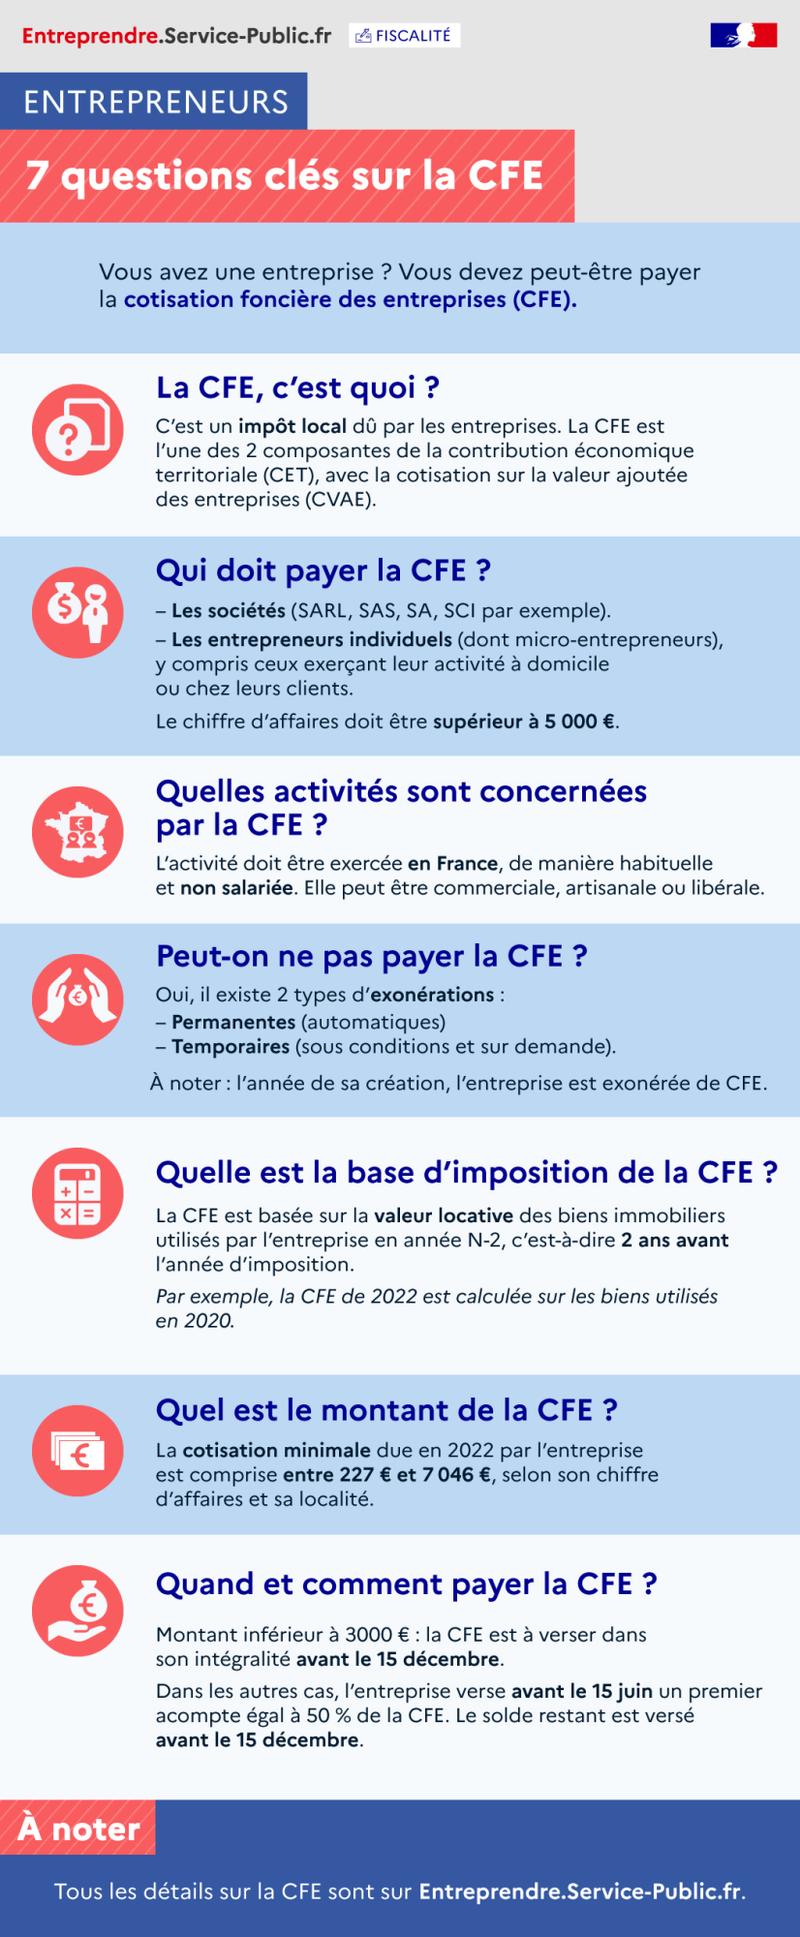 Illustration X - 7 questions clés sur la CFE - plus de détails dans le texte suivant l’infographie